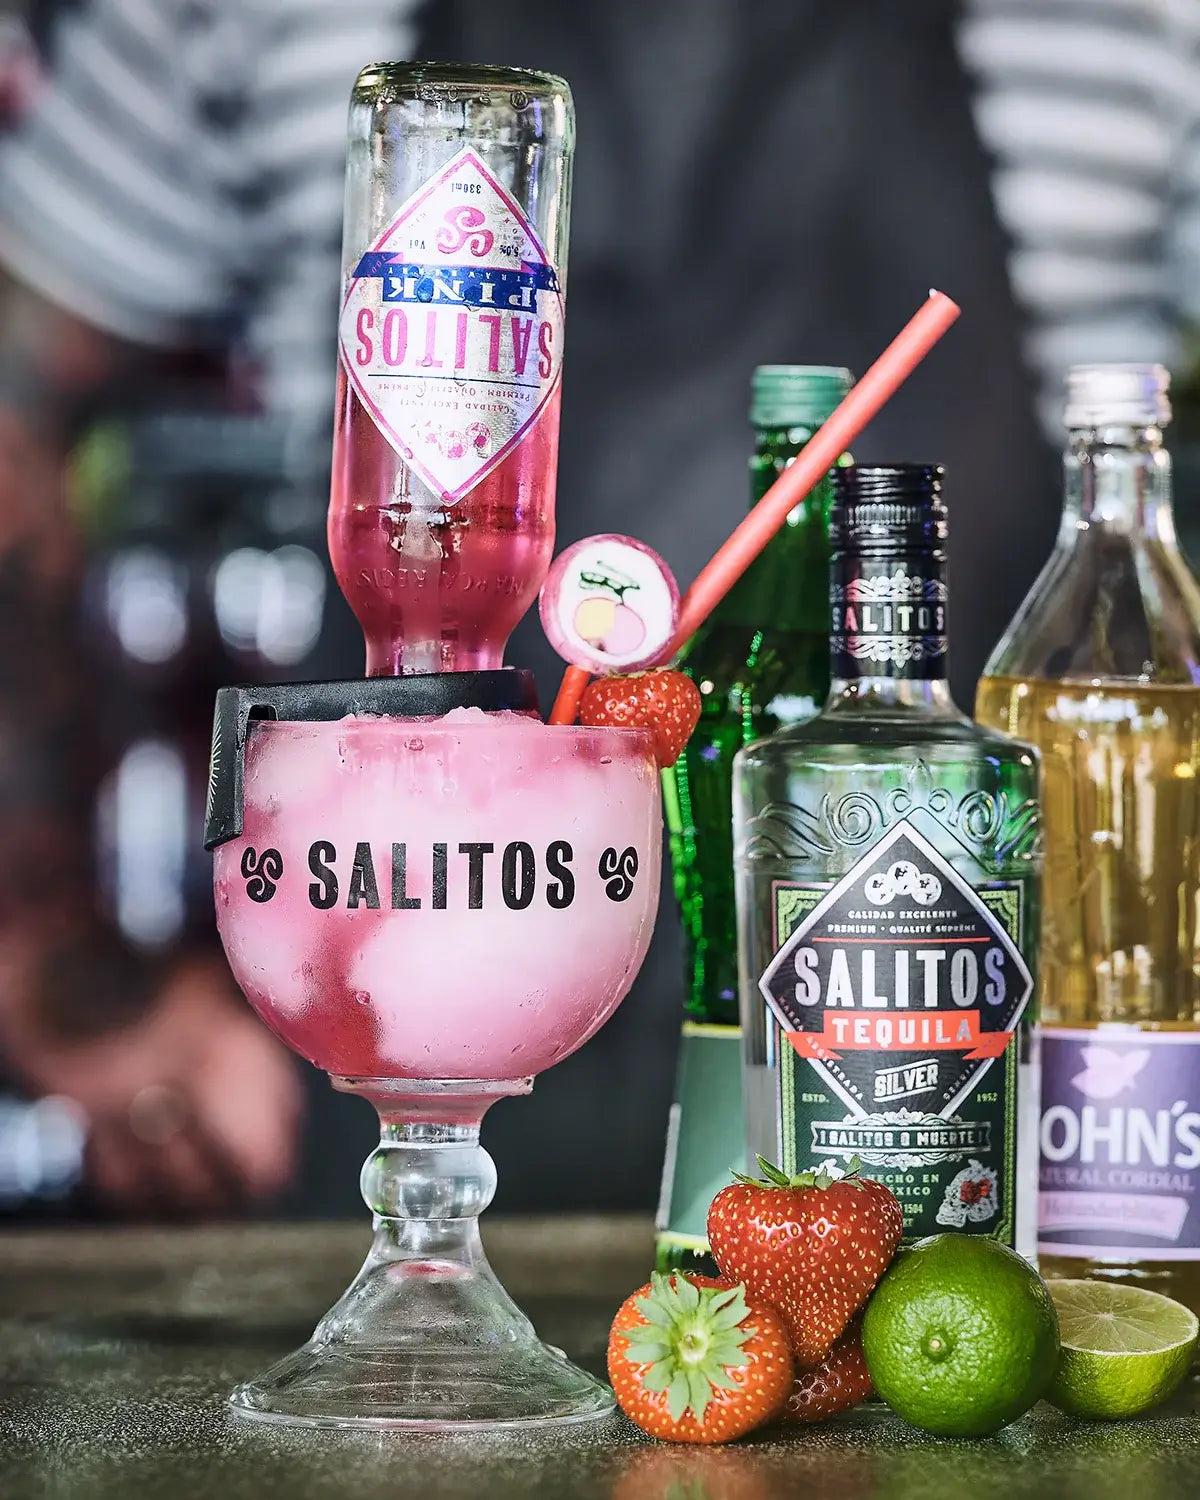 Ein Cocktail gemischt mit einer Salitos Flasche im Salrita Cocktailglas